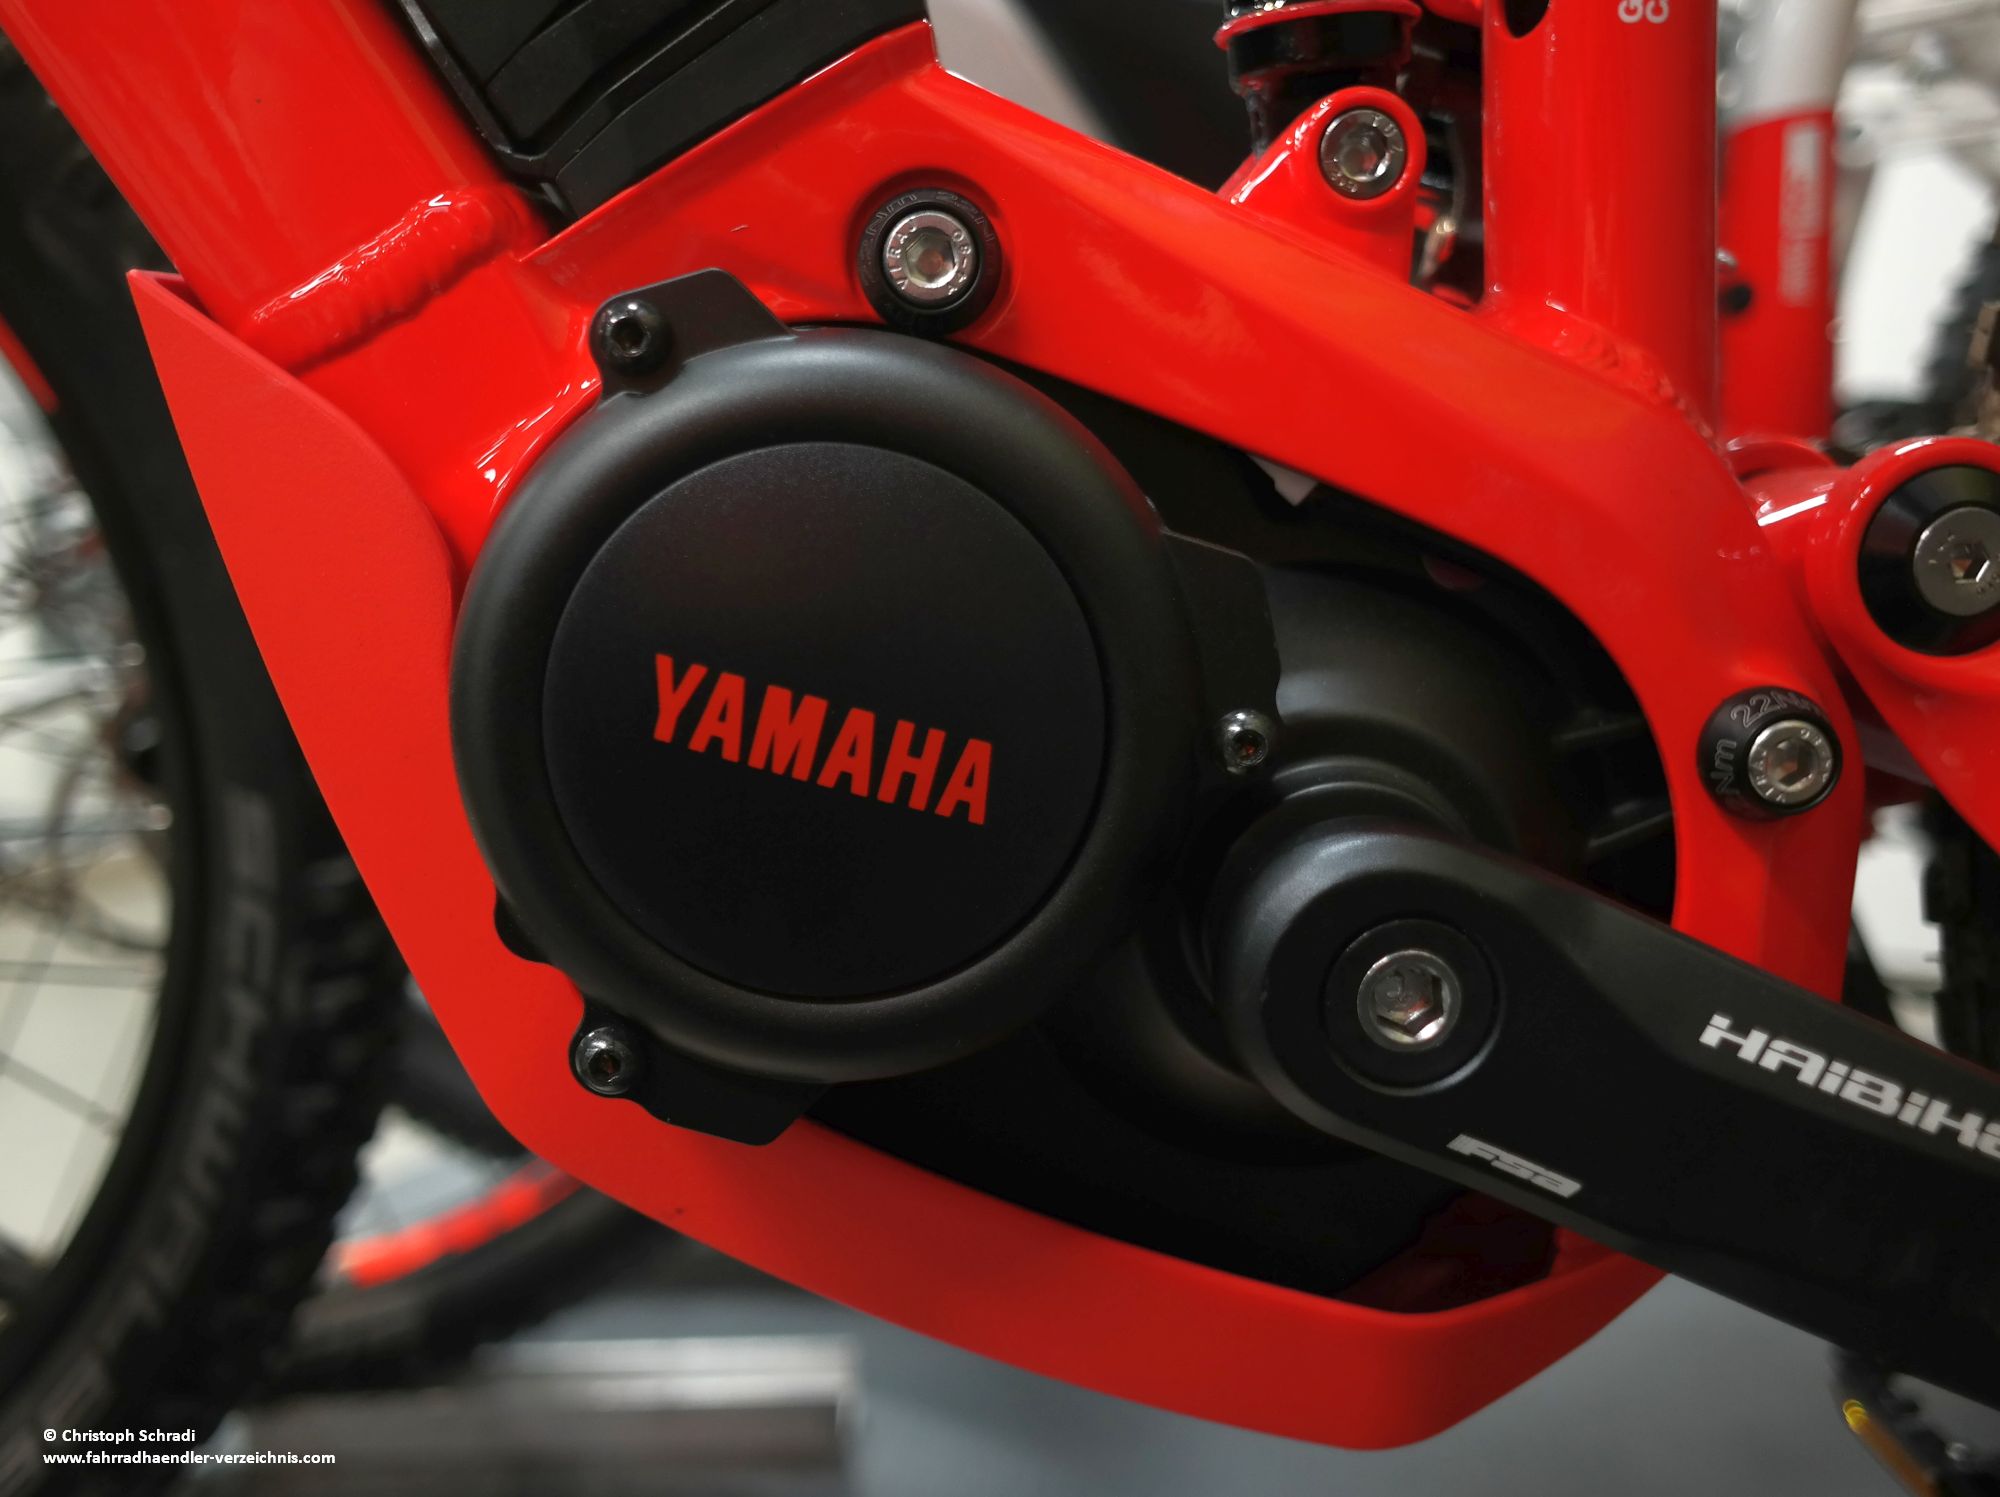 Der Yamaha Antrieb PW-SE stellt eine leicht verbesserte Version des PW E-Bike Motors von Yamaha dar, welcher nun bis zum Erreichen von einer Trittfrequenz von 110 U/min Unterstützung liefert